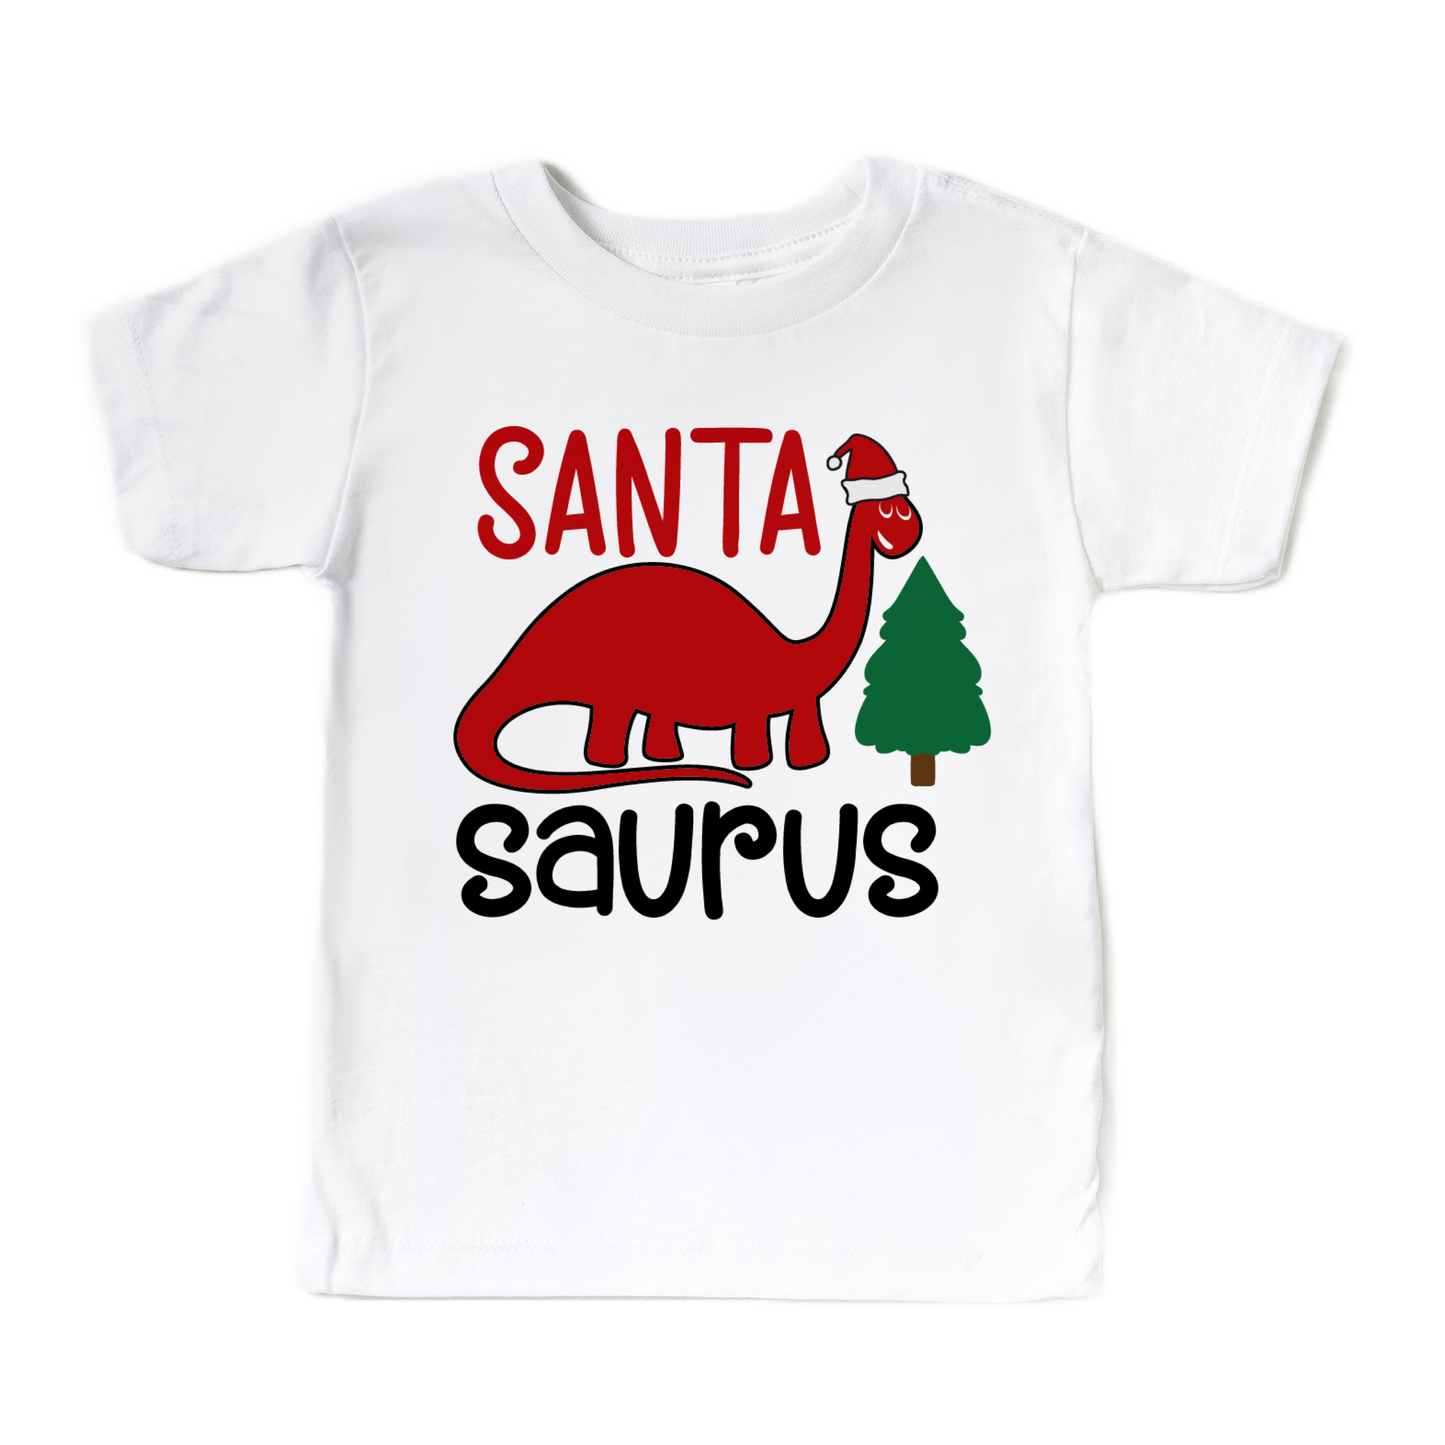 Santa-Saurus Christmas T-Shirt for kids, boys and girls